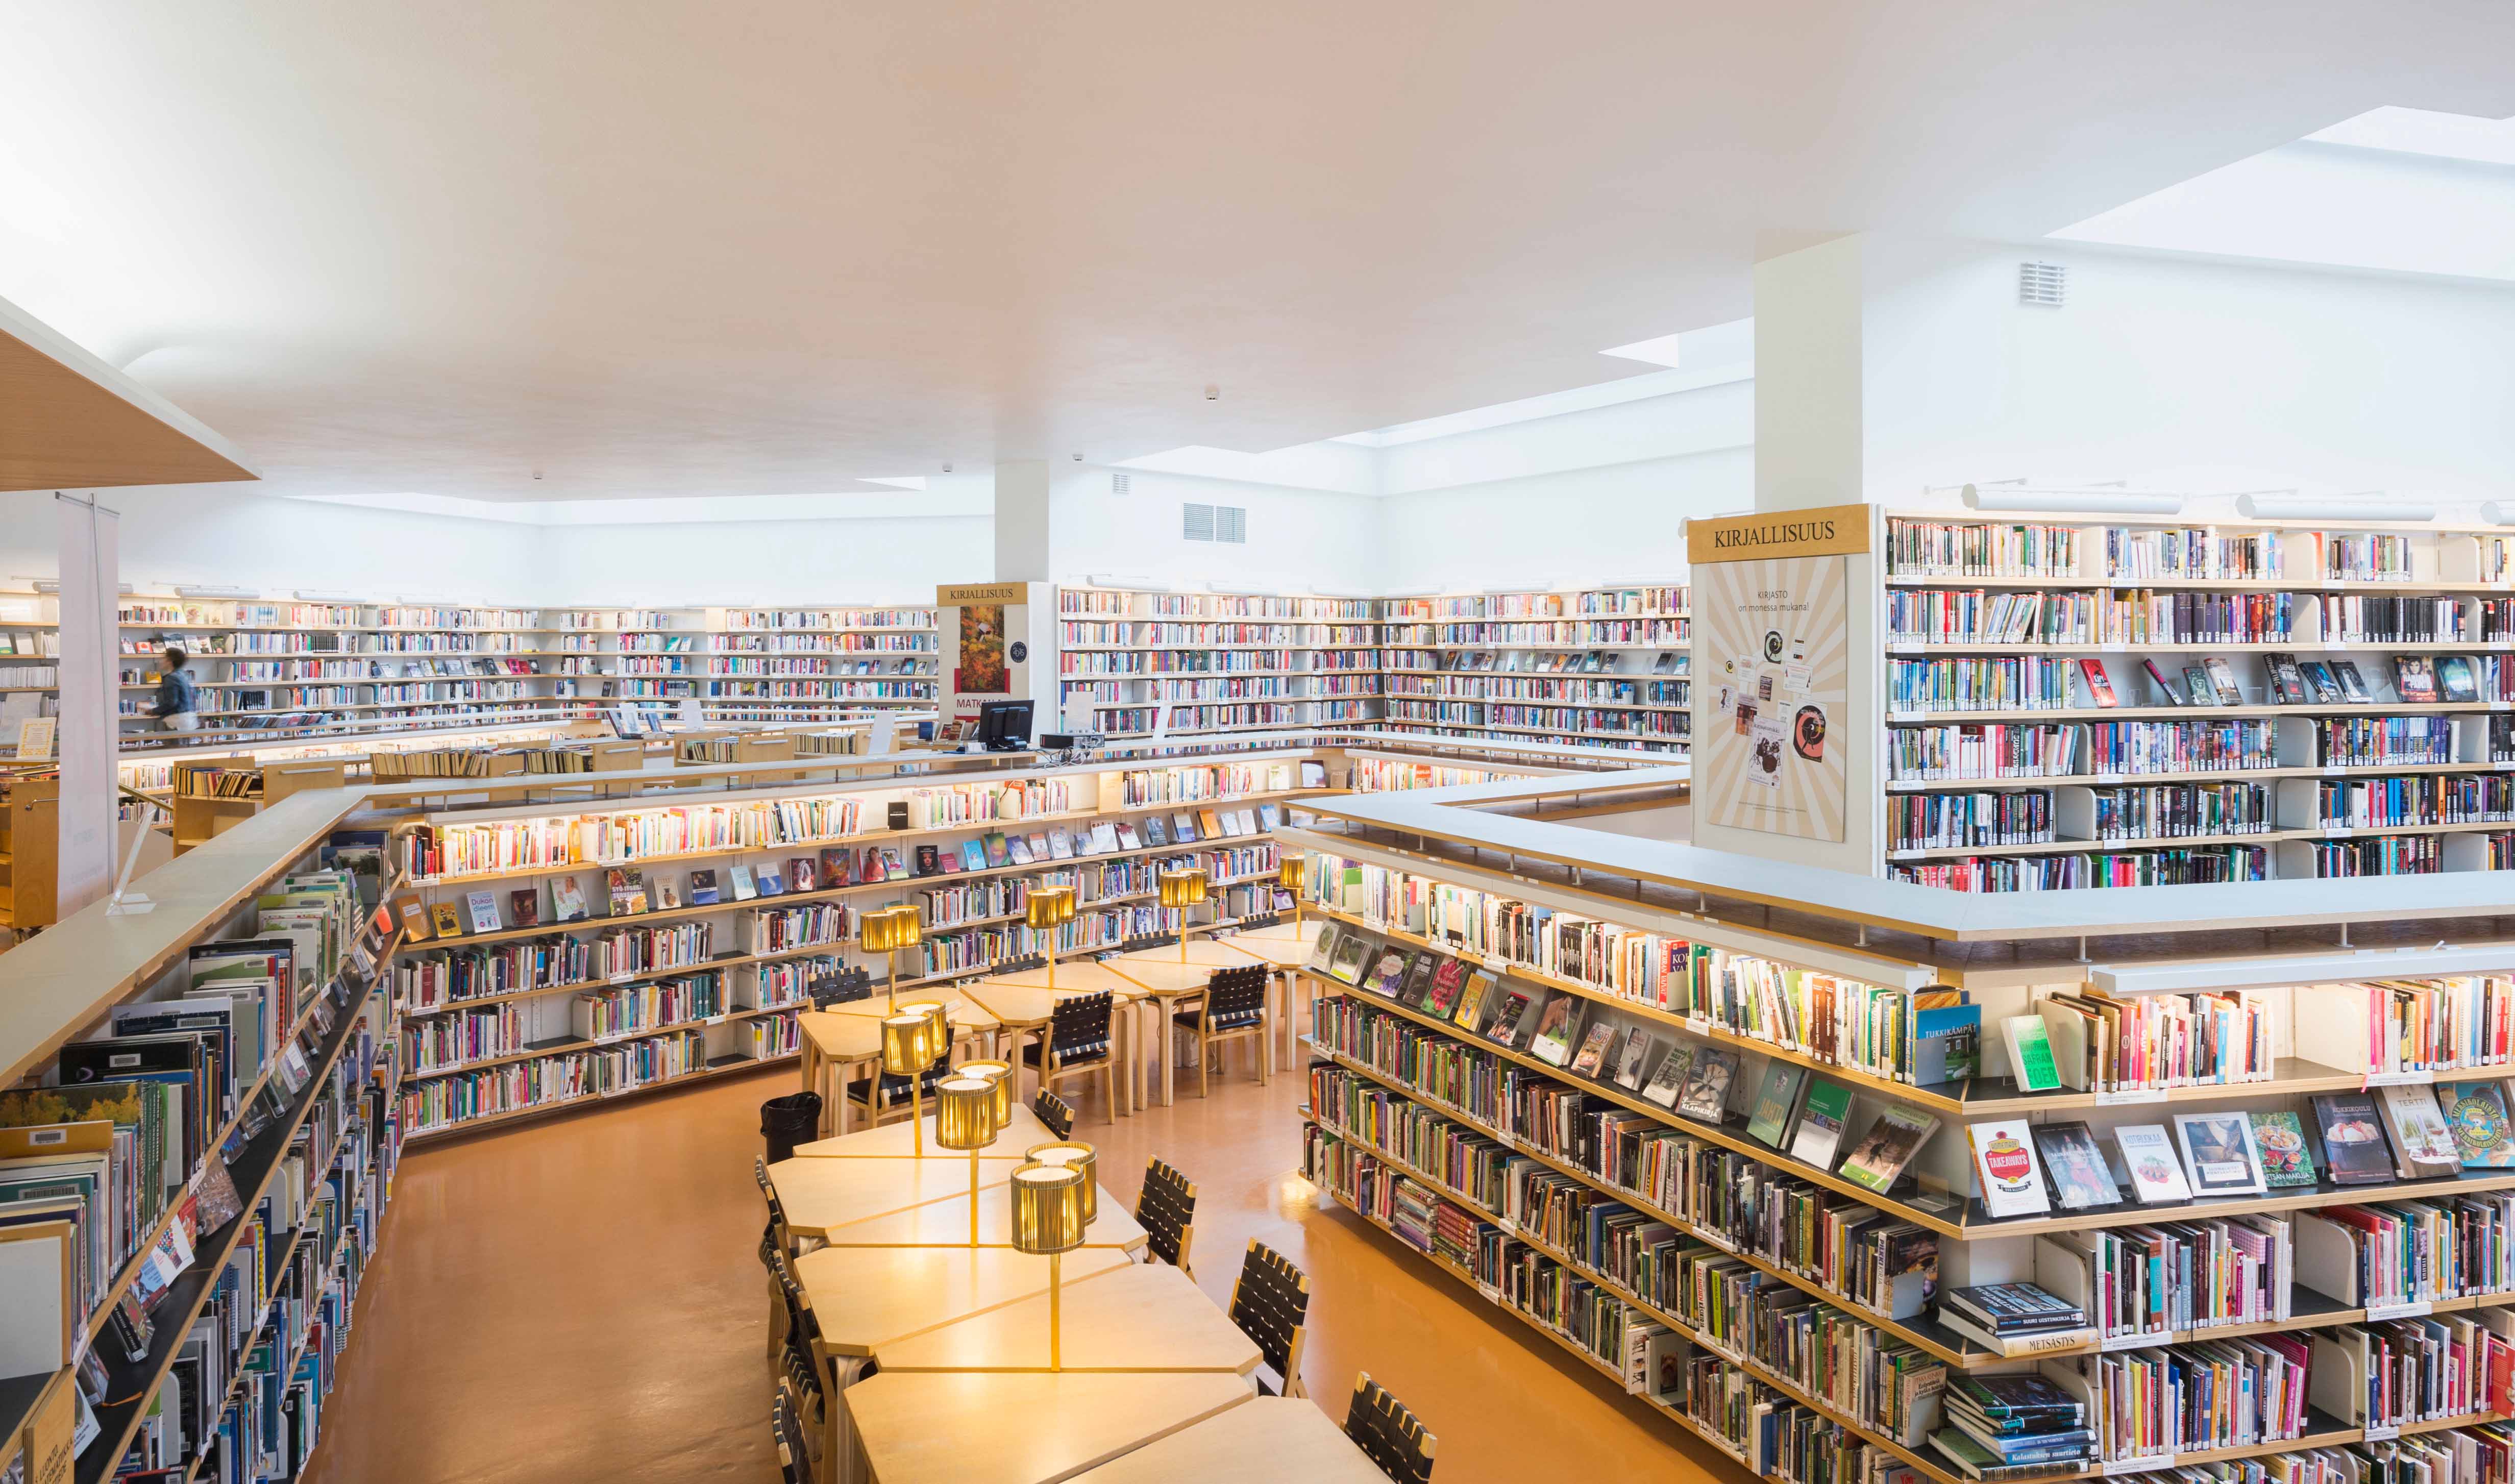 Bücher und Lesebereich in der Bibliothek von Rovaniemi in Finnland.